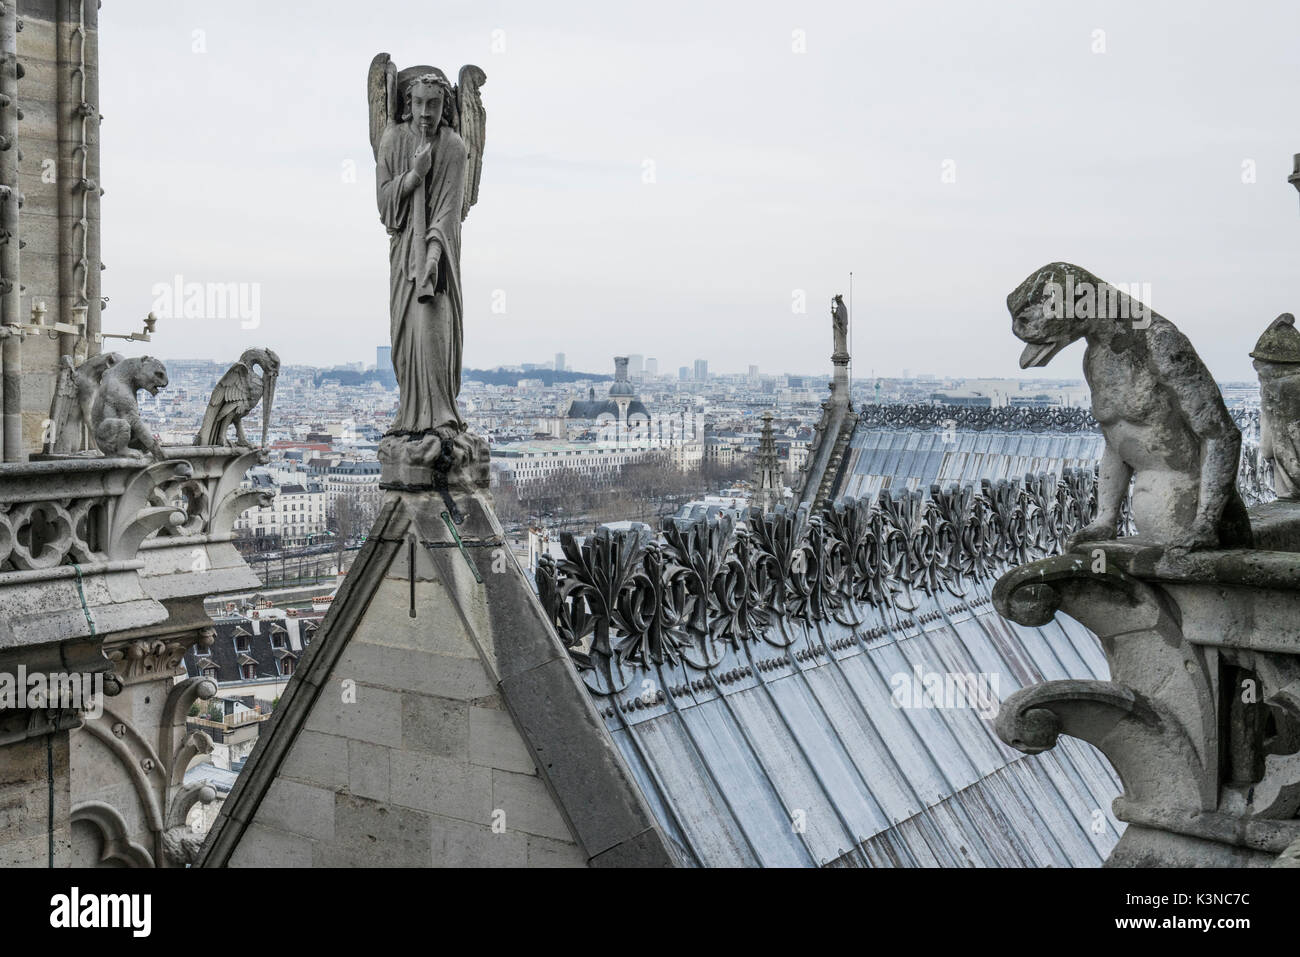 Gargouille sur la cathédrale Notre Dame, Paris, France Banque D'Images